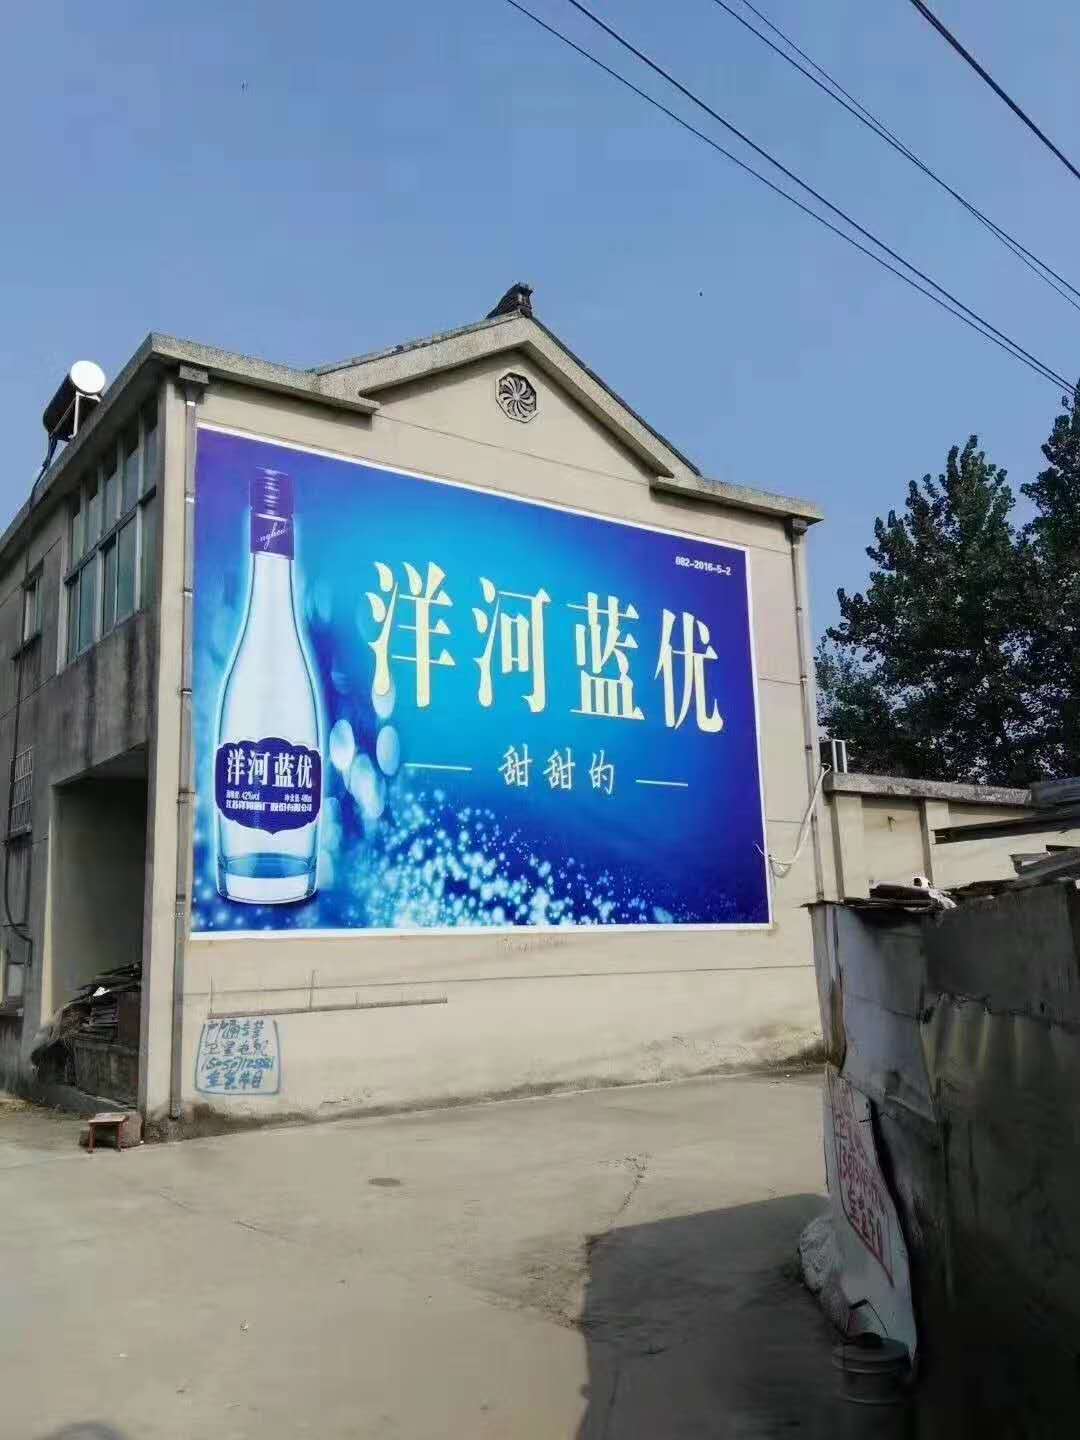 德阳墙体喷绘广告制作革新服务模式图片